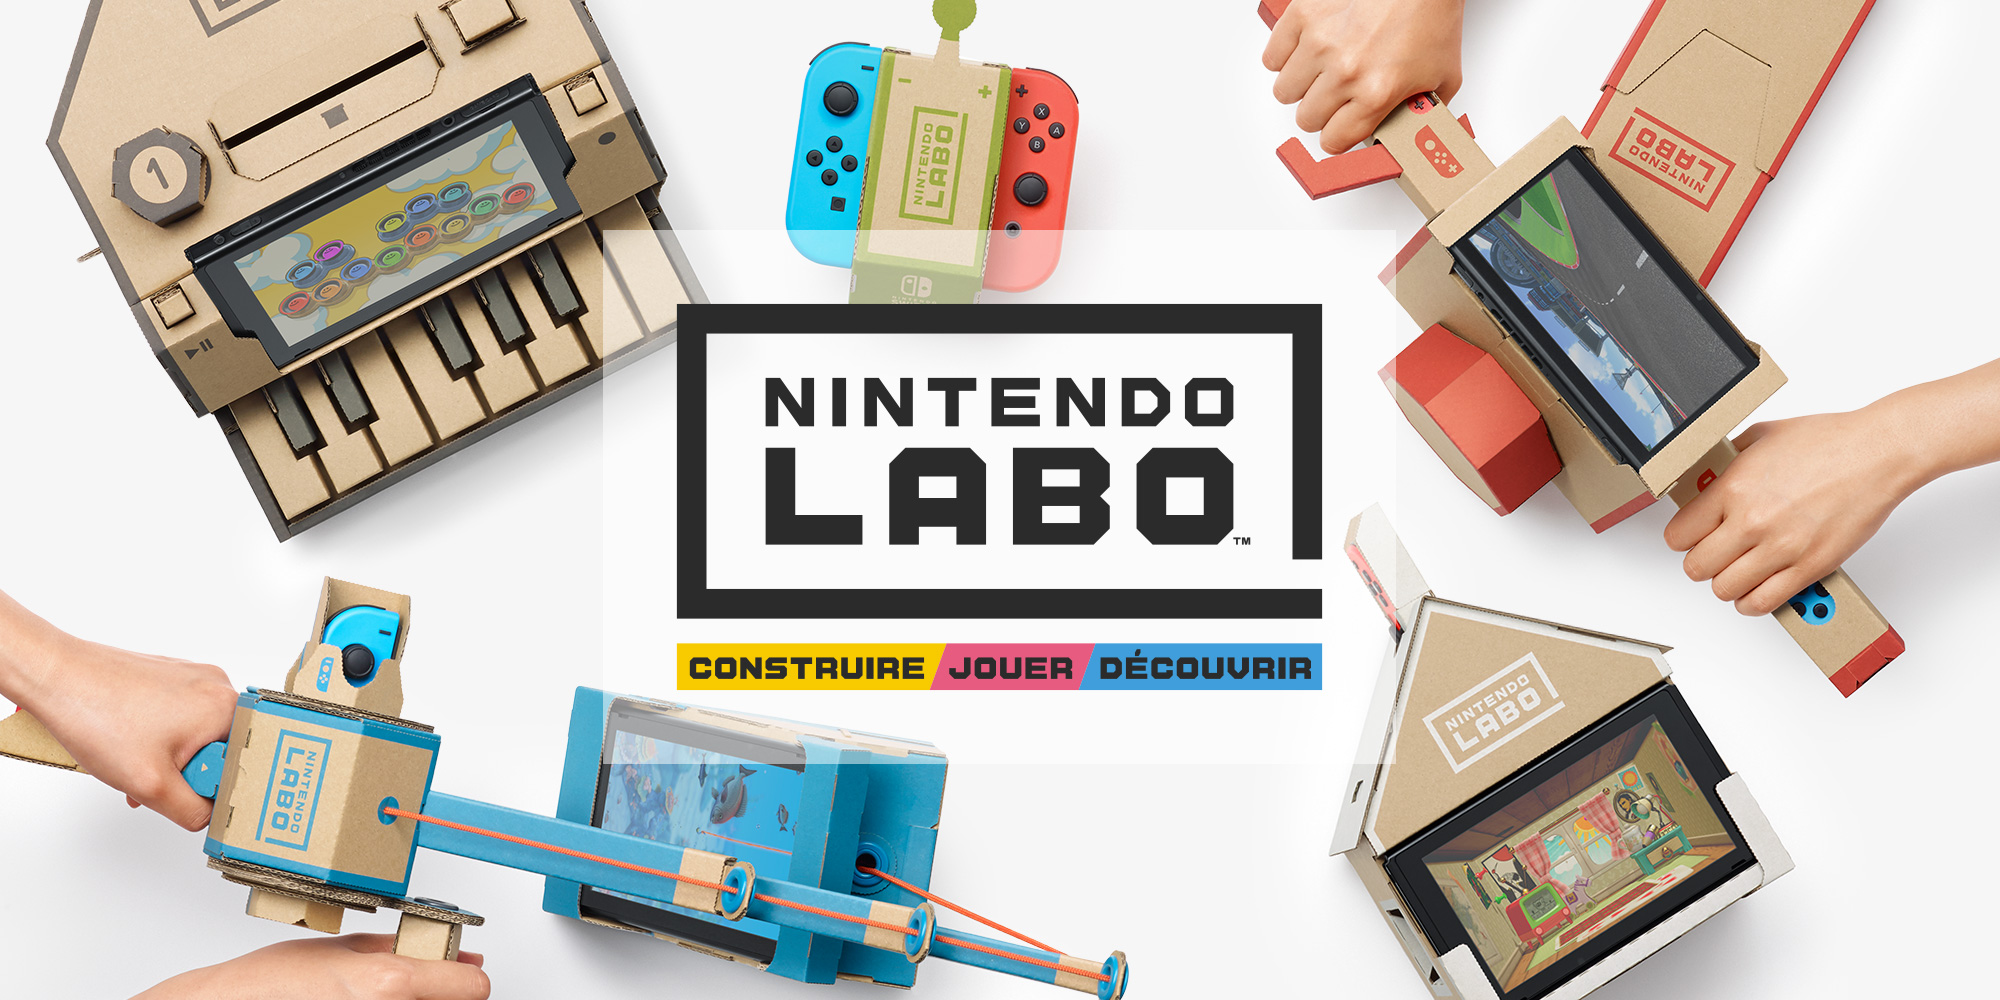 Nintendo Labo : une expérience unique pour construire, jouer et découvrir grâce à la Nintendo Switch